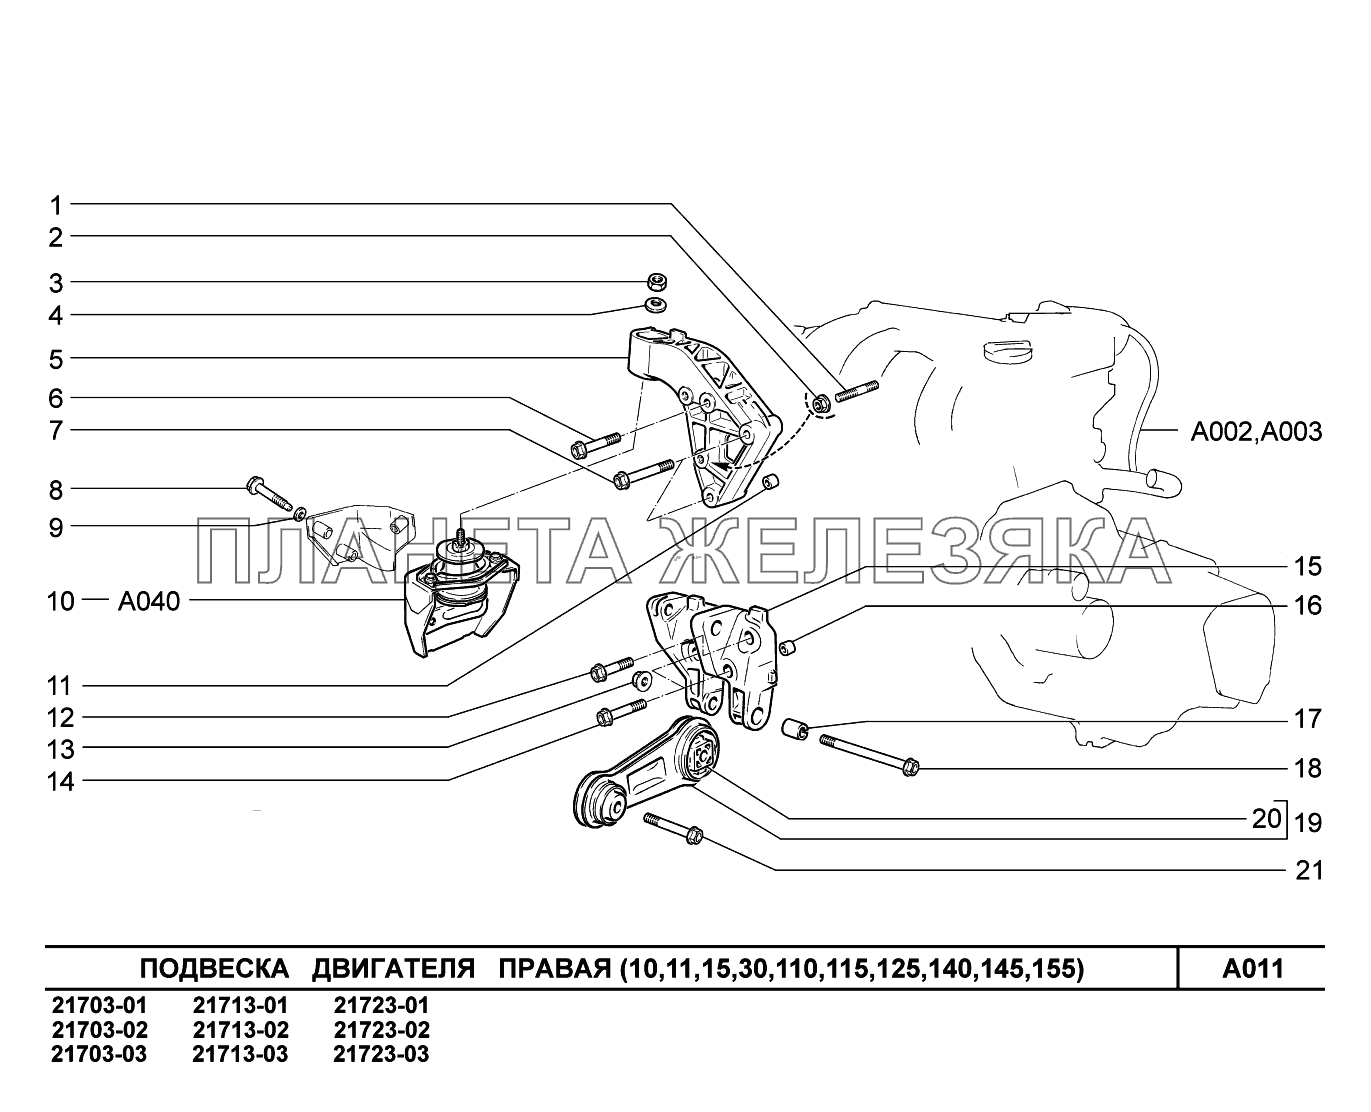 A011. Подвеска двигателя правая ВАЗ-2170 